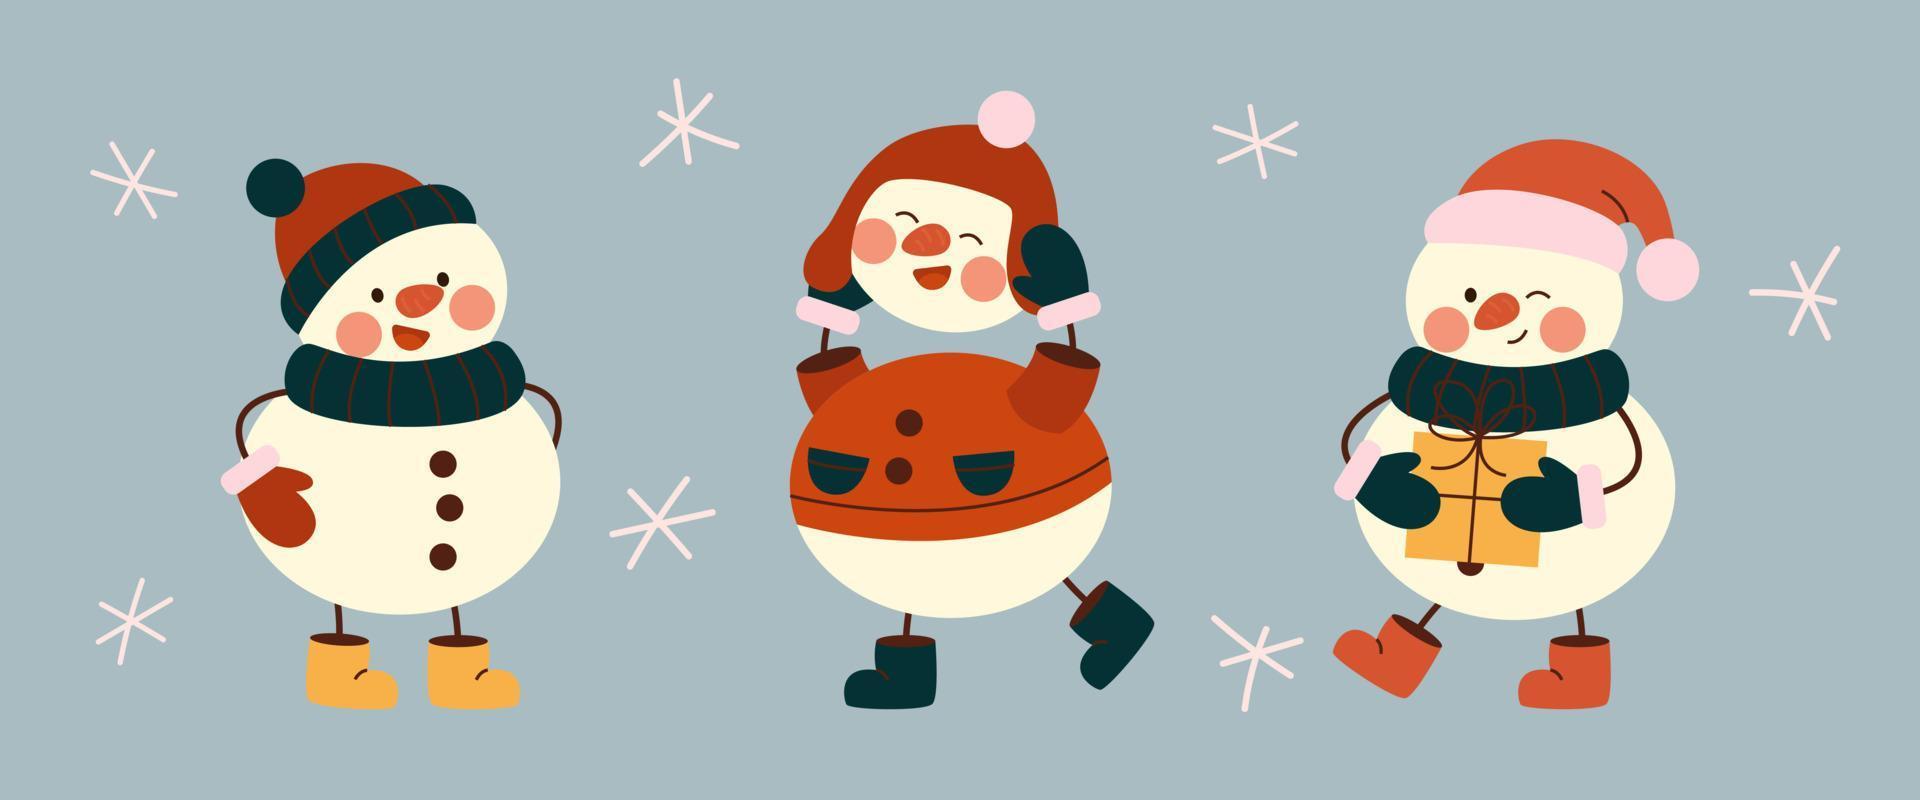 satz süßer weihnachtsschneemänner in warmen mützen, schals, fäustlingen. Fröhliche Schneemänner in verschiedenen Kostümen mit Geschenk und Beinen in Stiefeln. Winterferien Schneemänner. Frohe Weihnachten. vektor